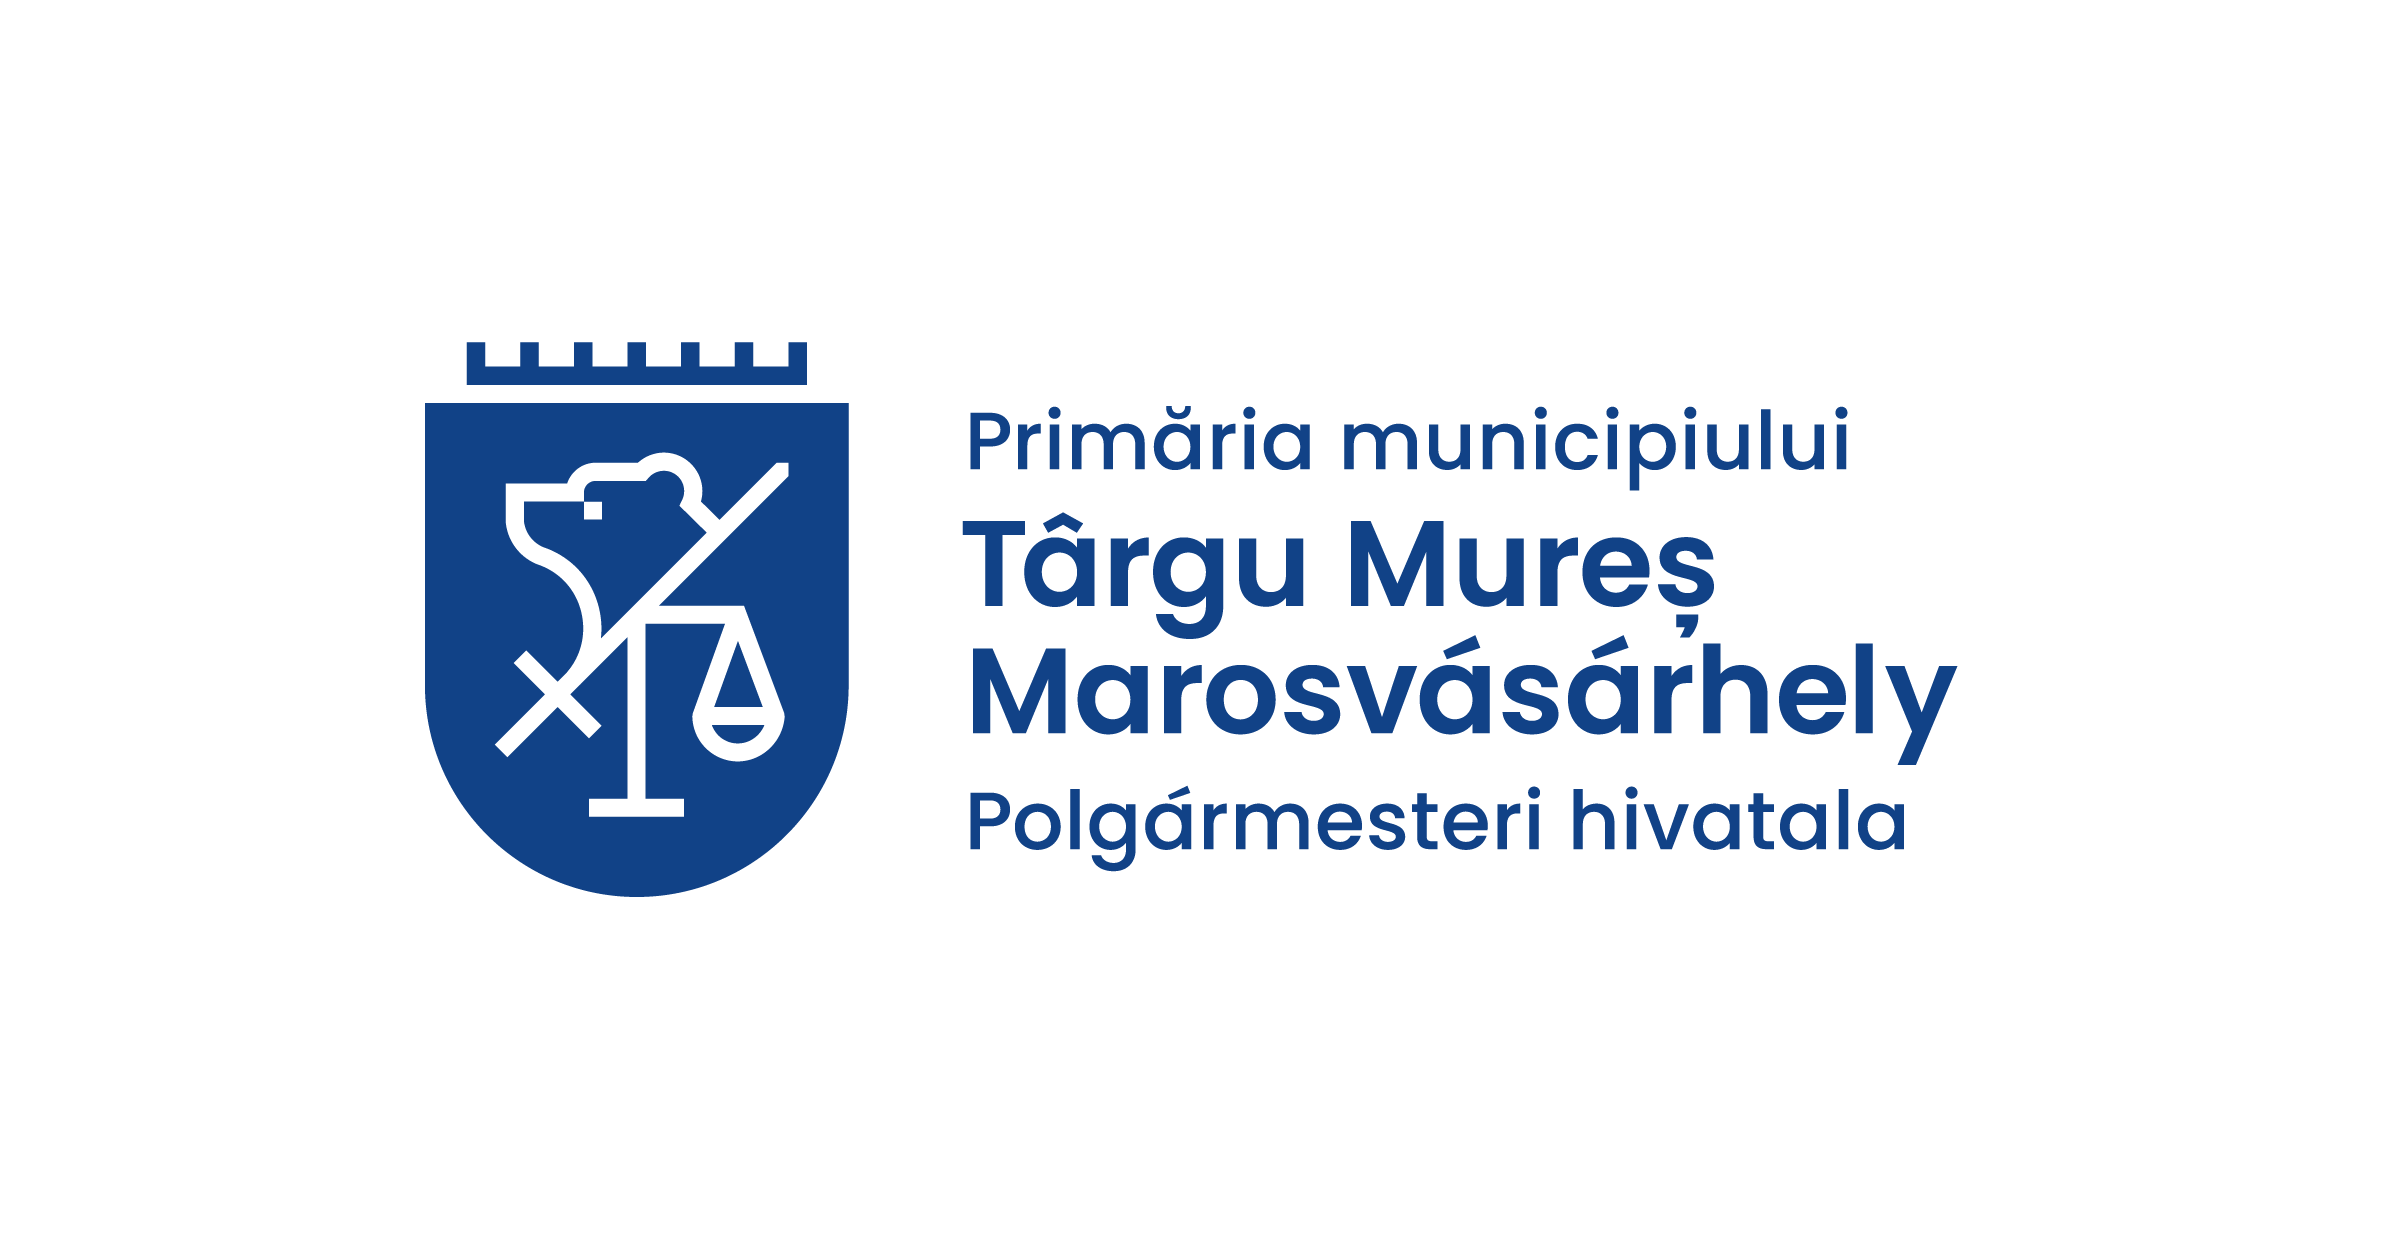 Primaria Municipiului Targu Mures